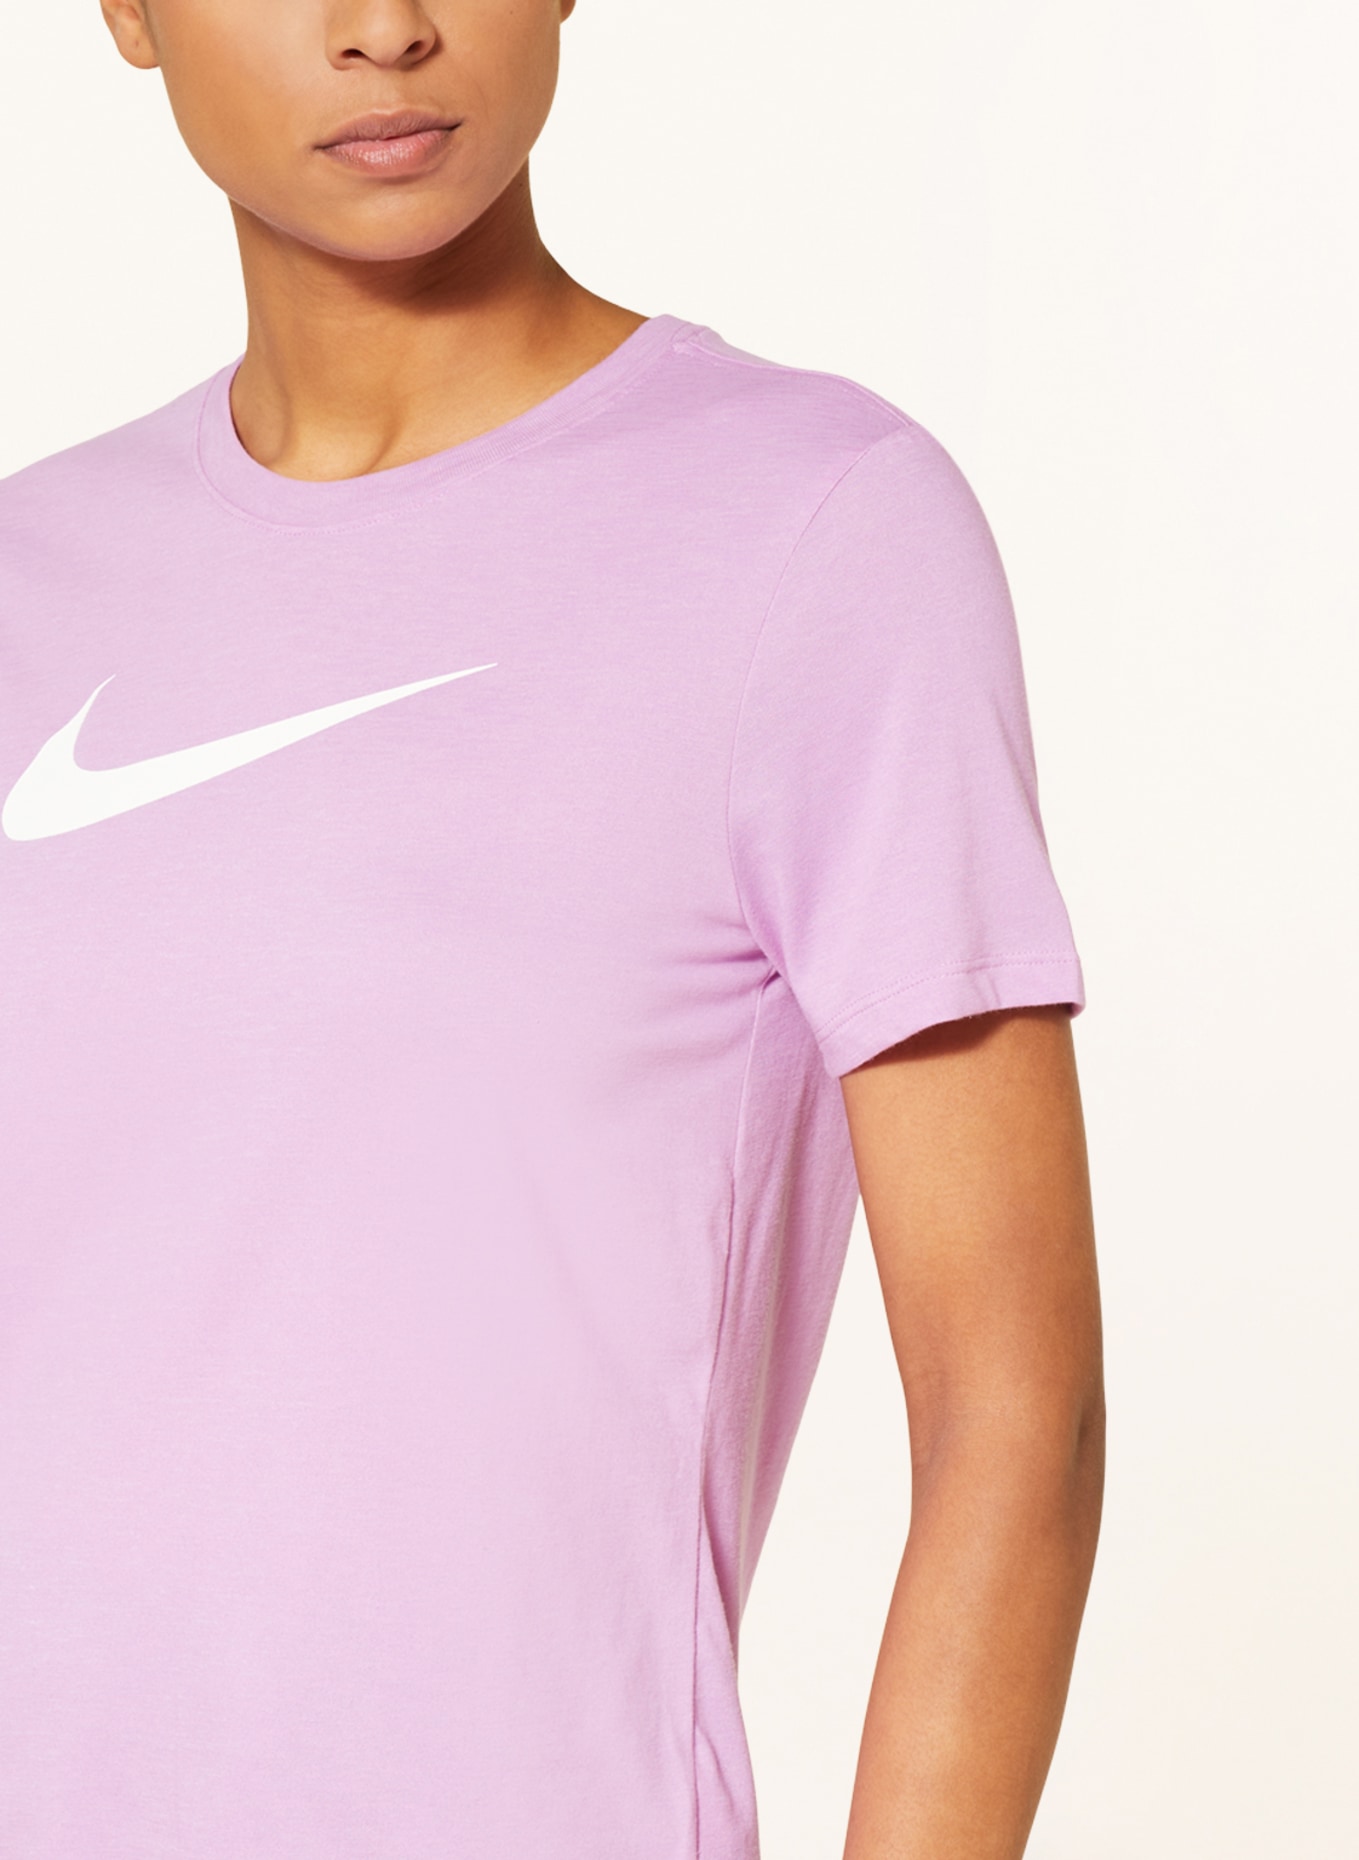 Nike T-shirt DRI-FIT SWOOSH, Color: LIGHT PURPLE (Image 4)